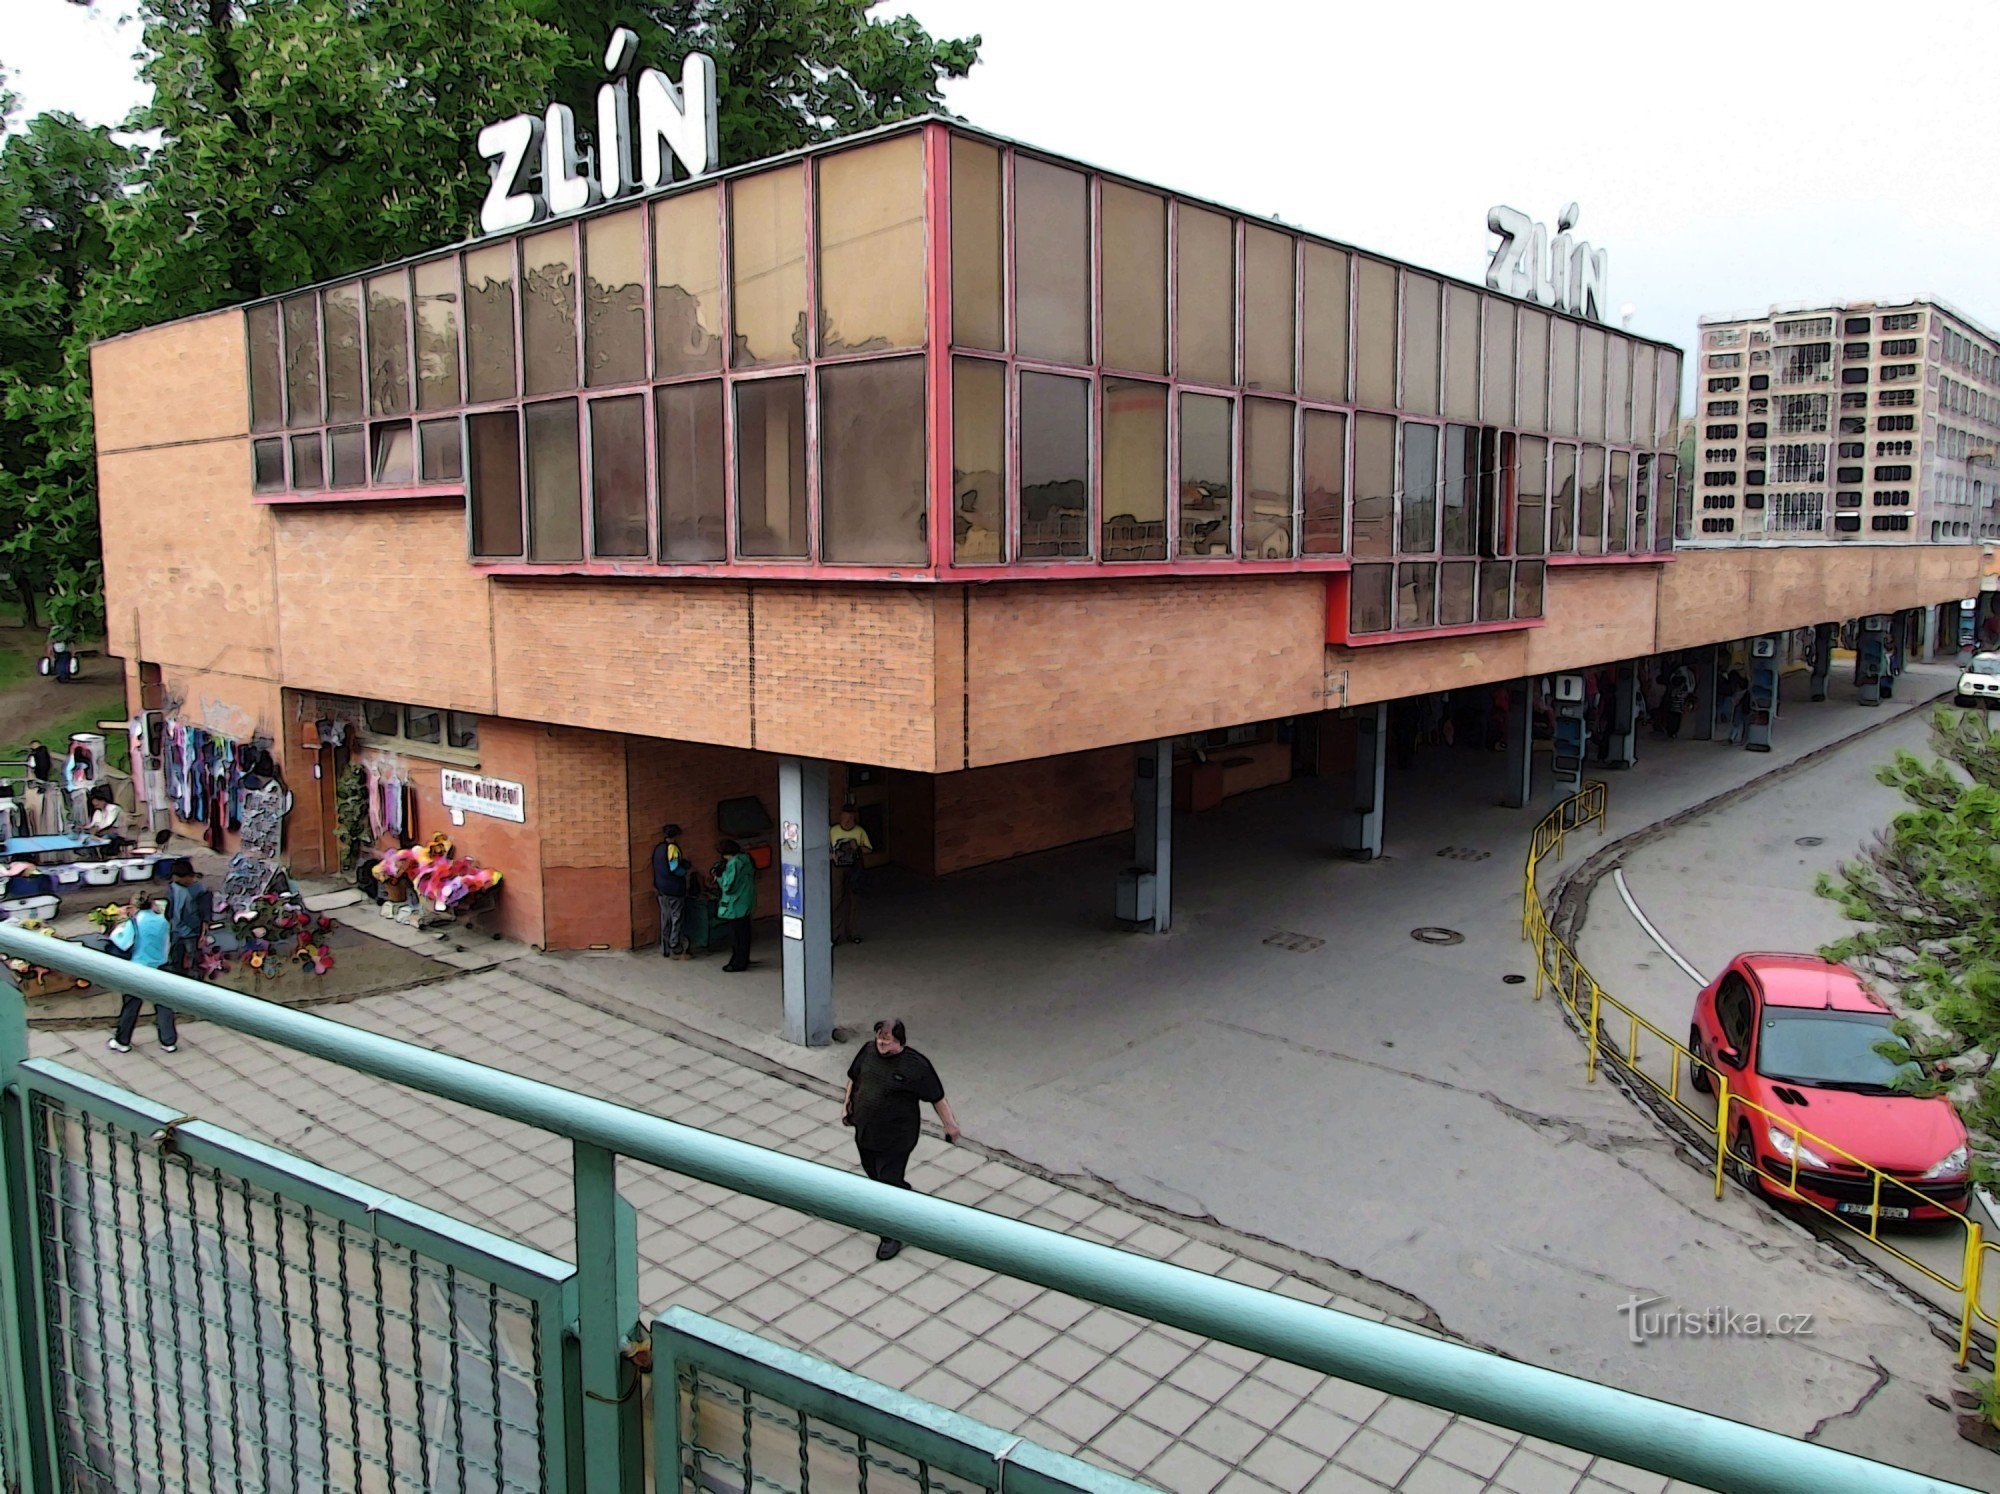 Busstation van Zlín